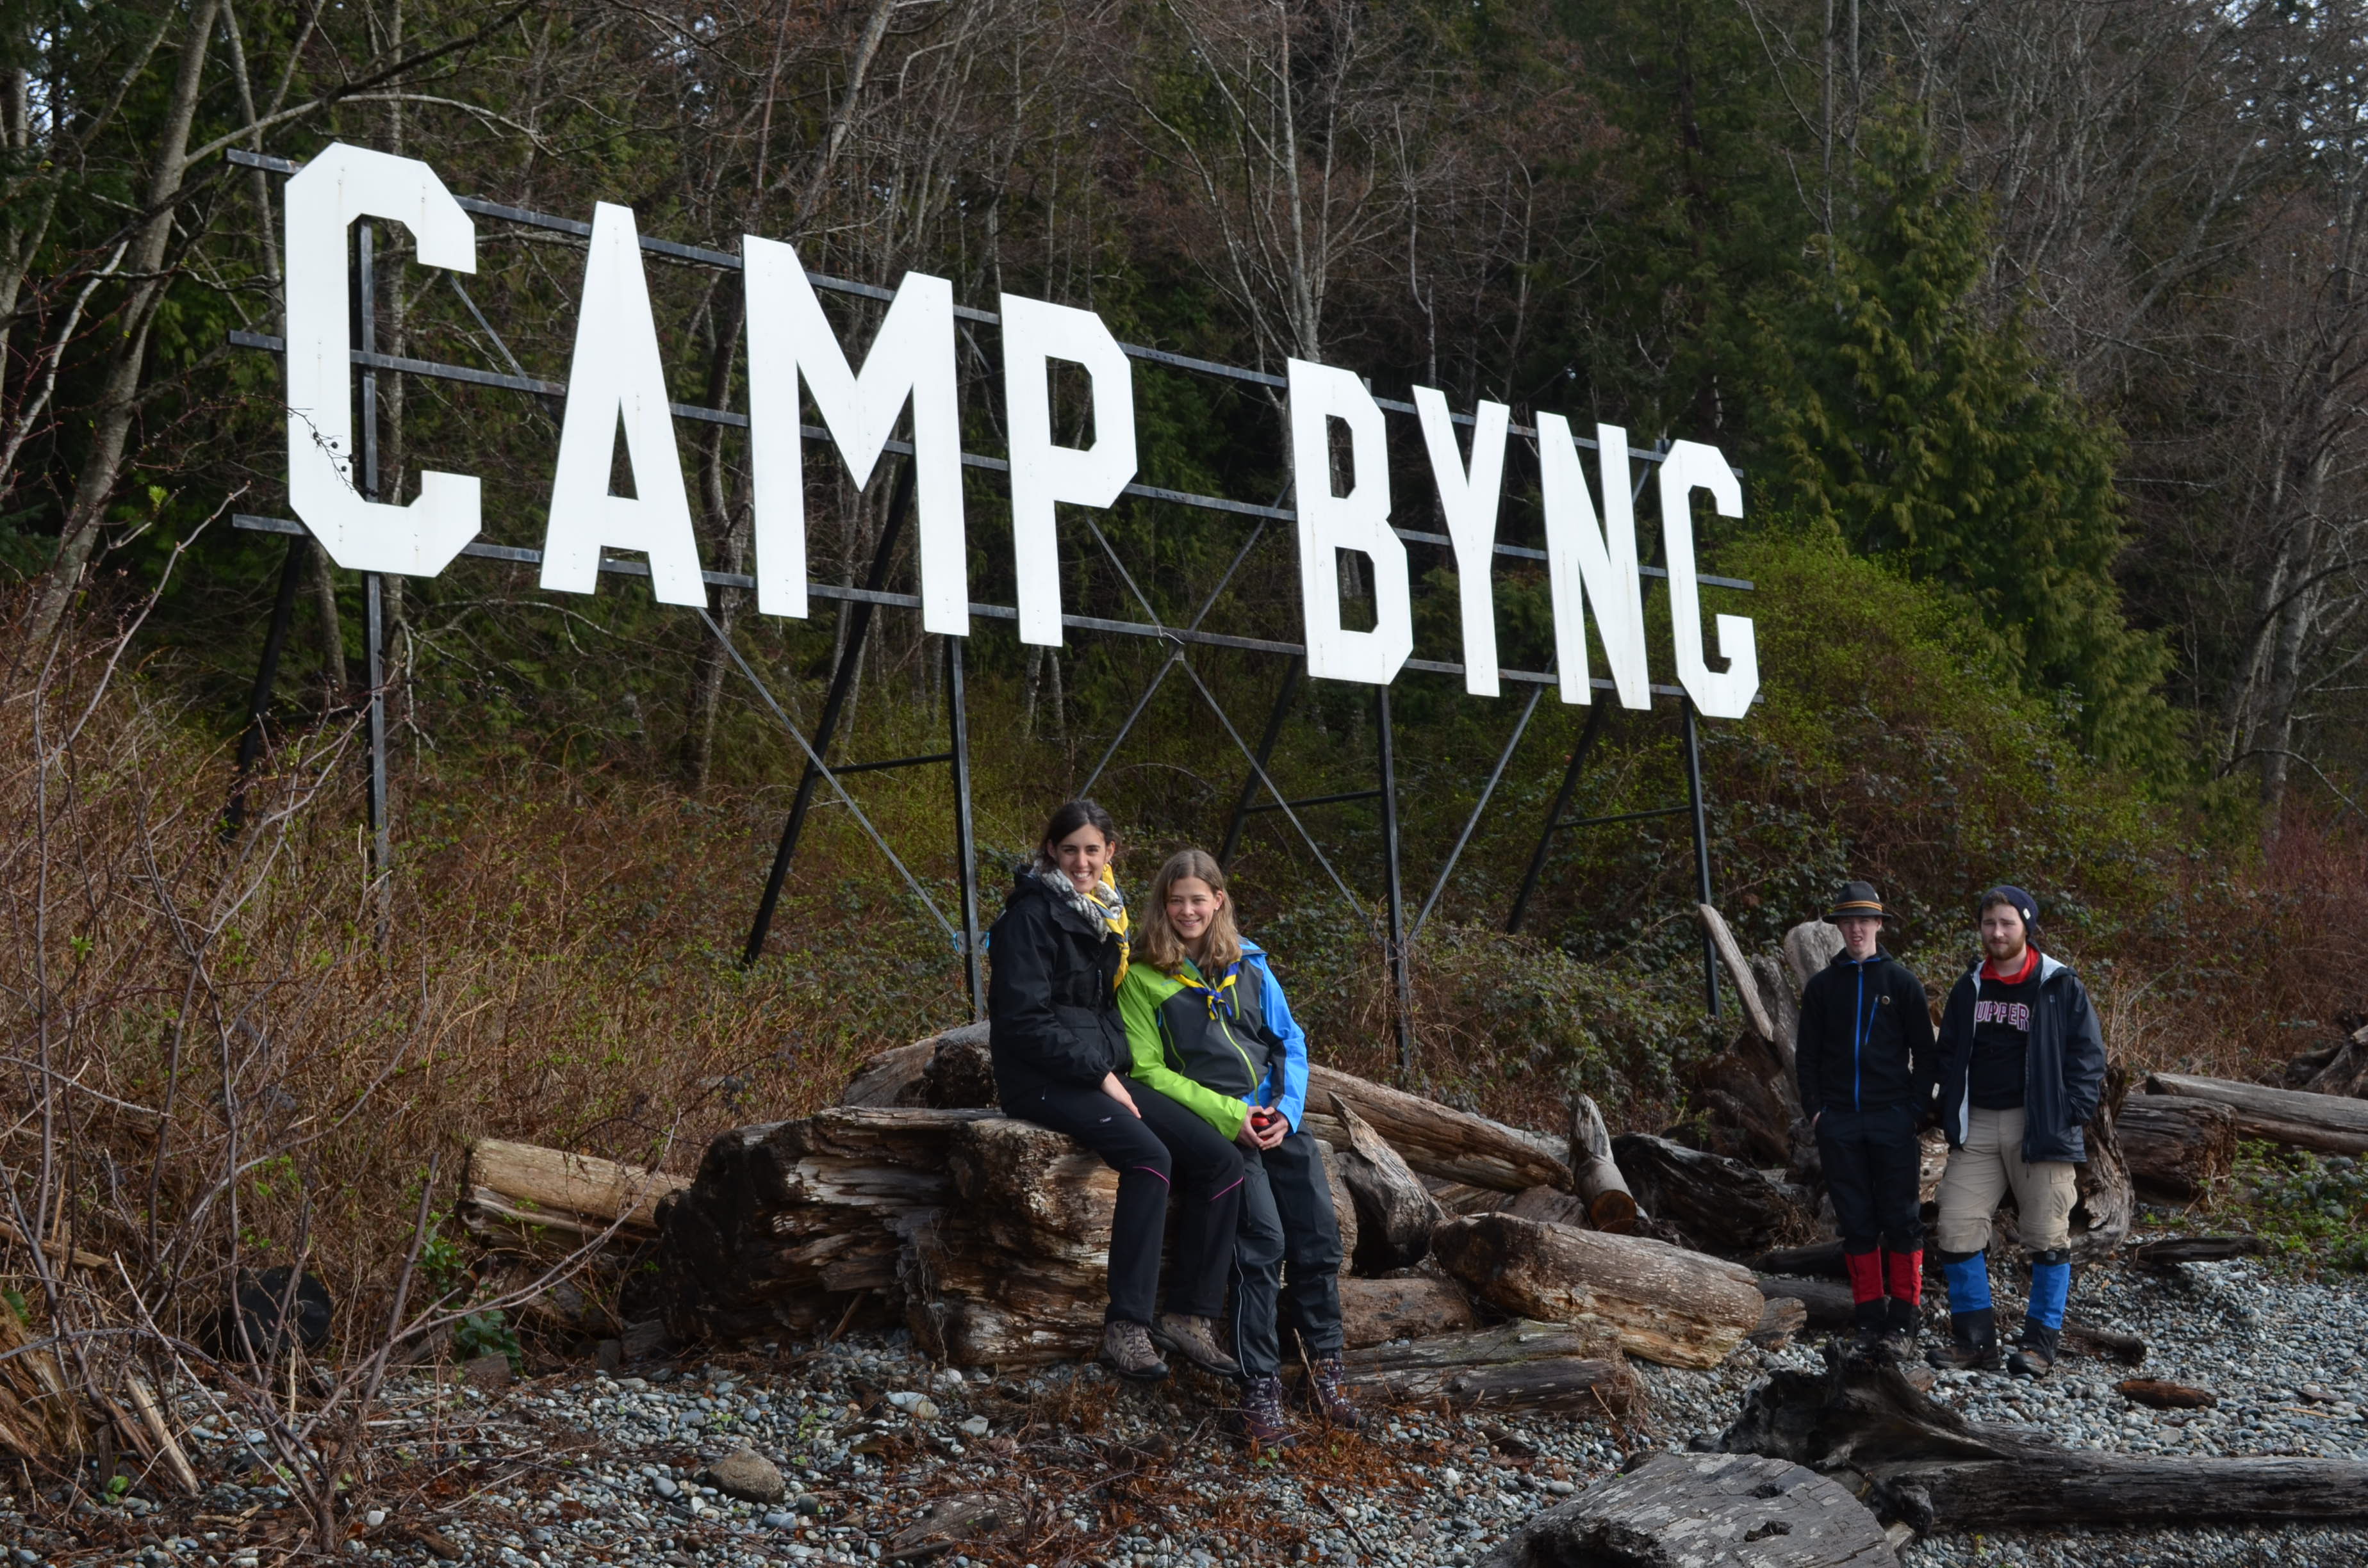 Descobrint l'espectacular terreny de Camp Byng que tenen a Vancouver Island